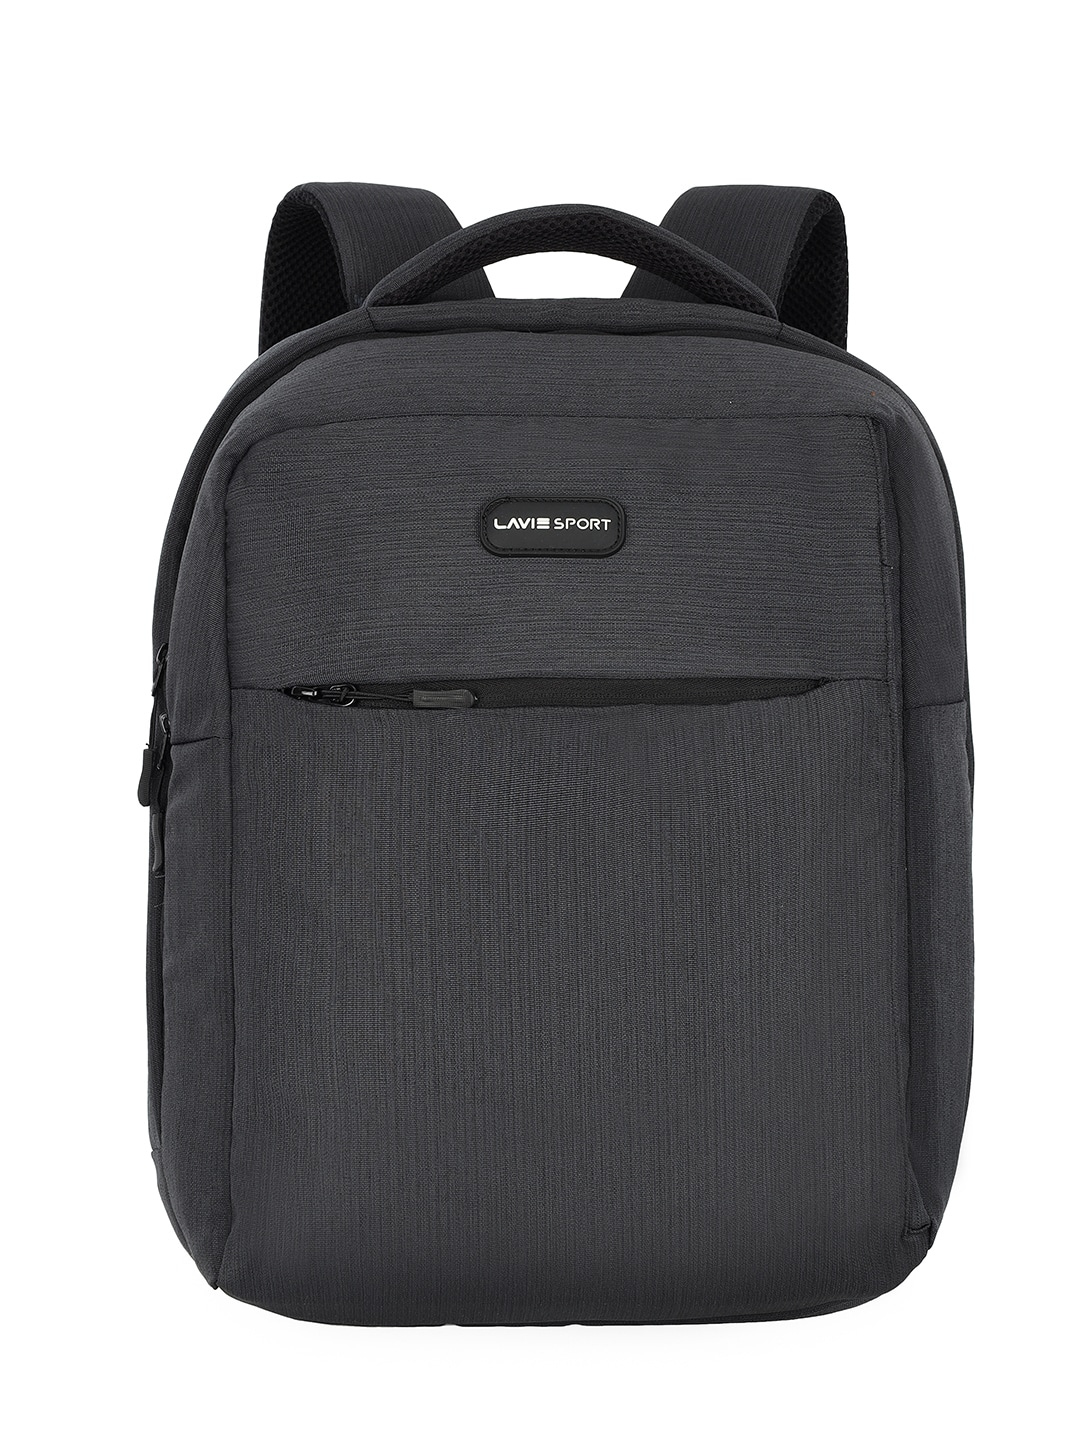 LAVIE SPORT Unisex 15 Inch Laptop Padded Backpack